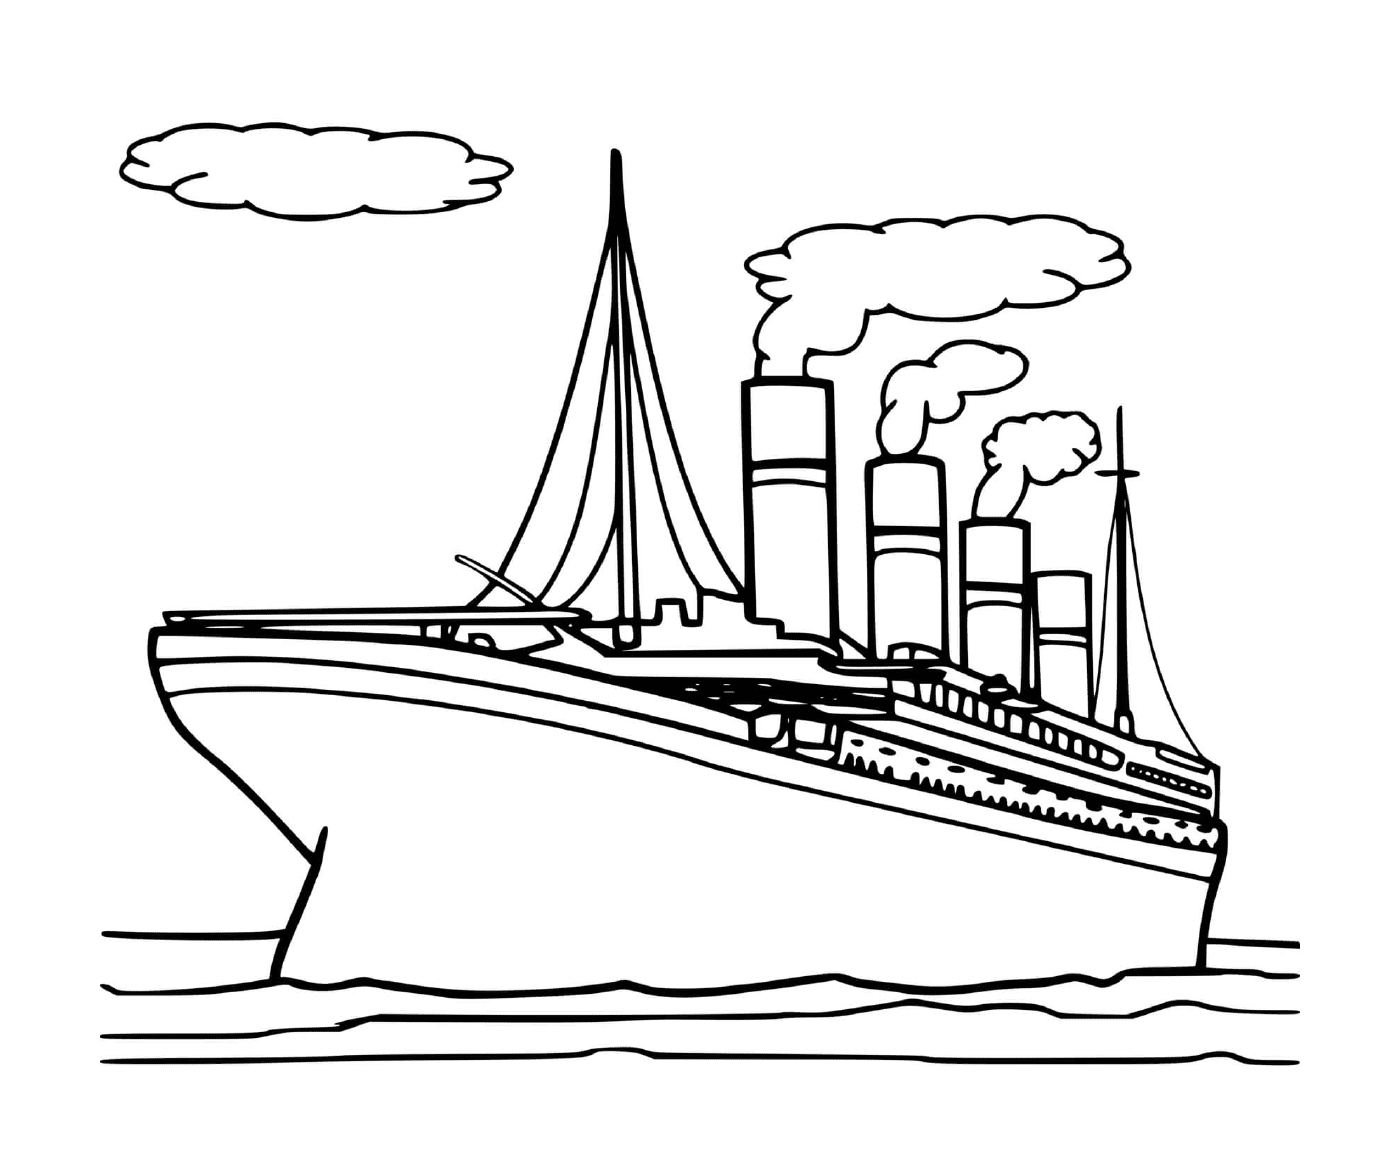  La barca del Titanic 